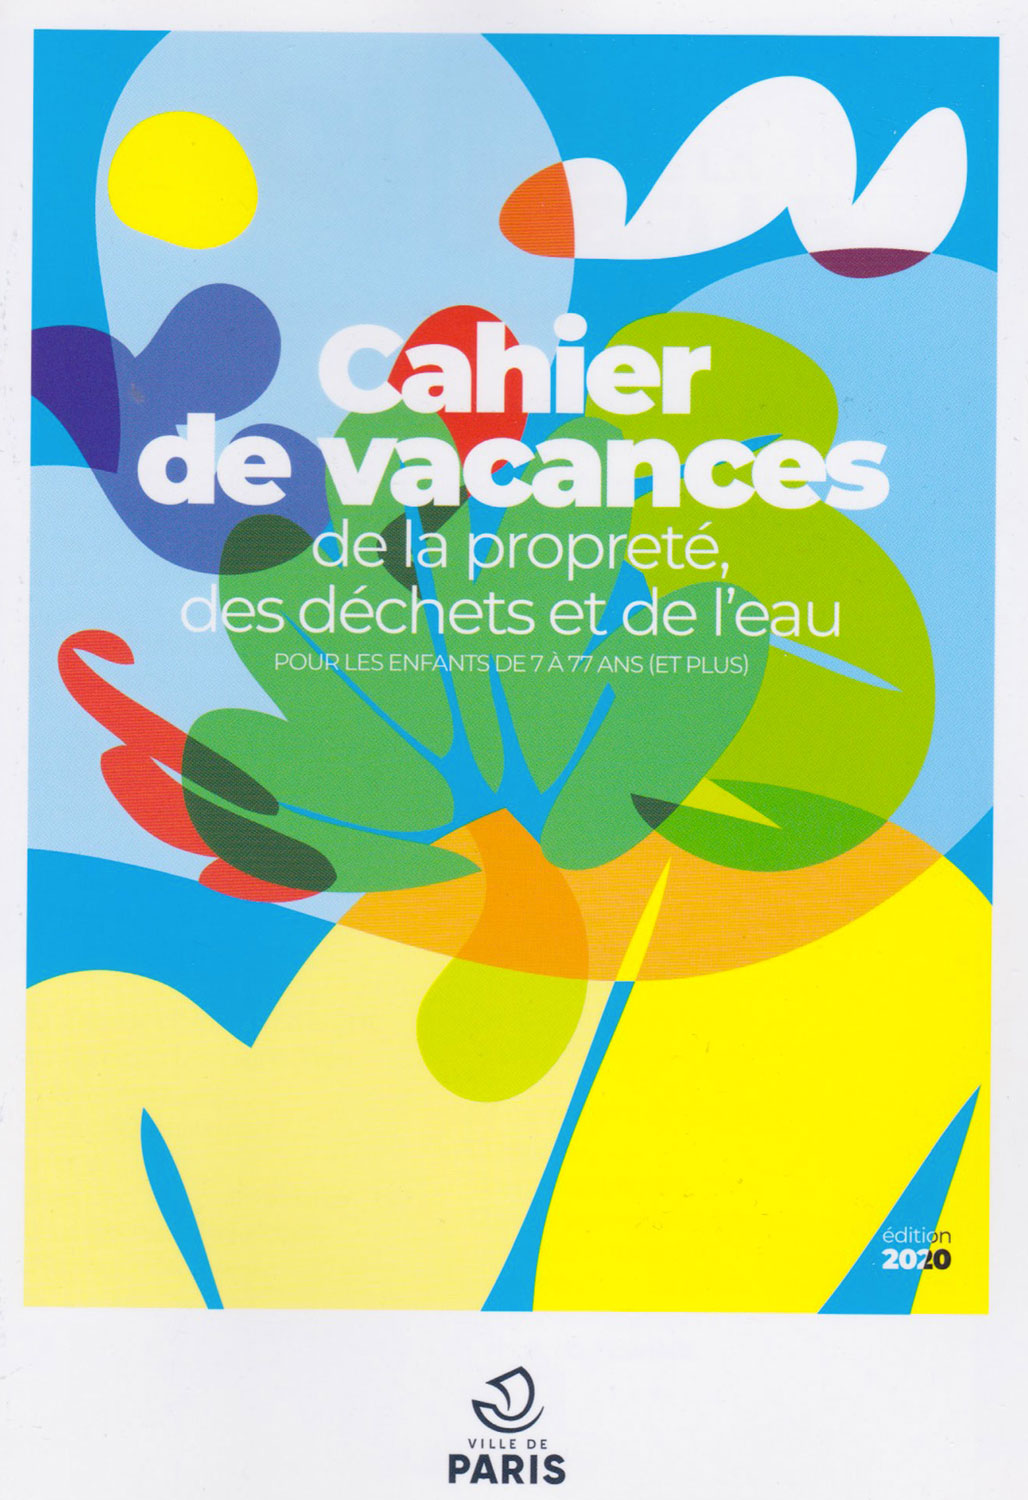 À destination des enfants cette fois, la mairie de Paris publie des « cahiers de vacances » avec des jeux pour apprendre le tri des déchets à Paris en s’amusant © Globe Reporters